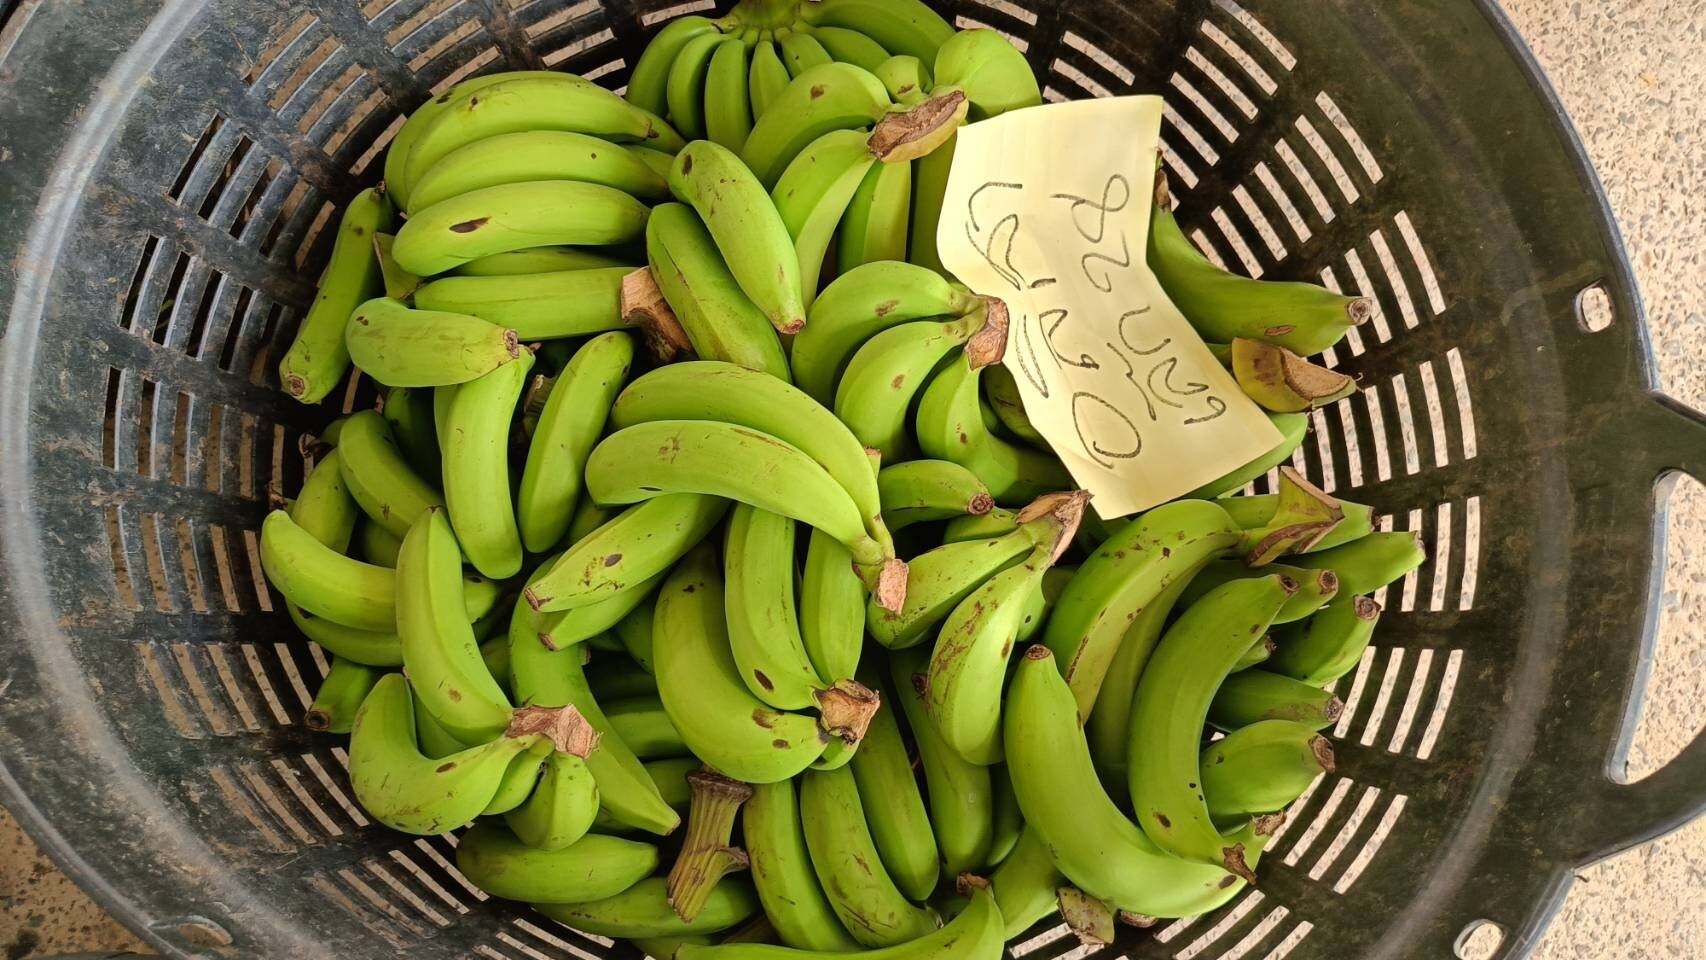 วว. จับมือ ธกส. ผลักดันโครงการ "กล้วยทางเลือกเพื่อทางรอด" นำนวัตกรรมเพิ่มผลผลิต ยกระดับคุณภาพส่งออกกล้วยหอมอุบลราชธานี